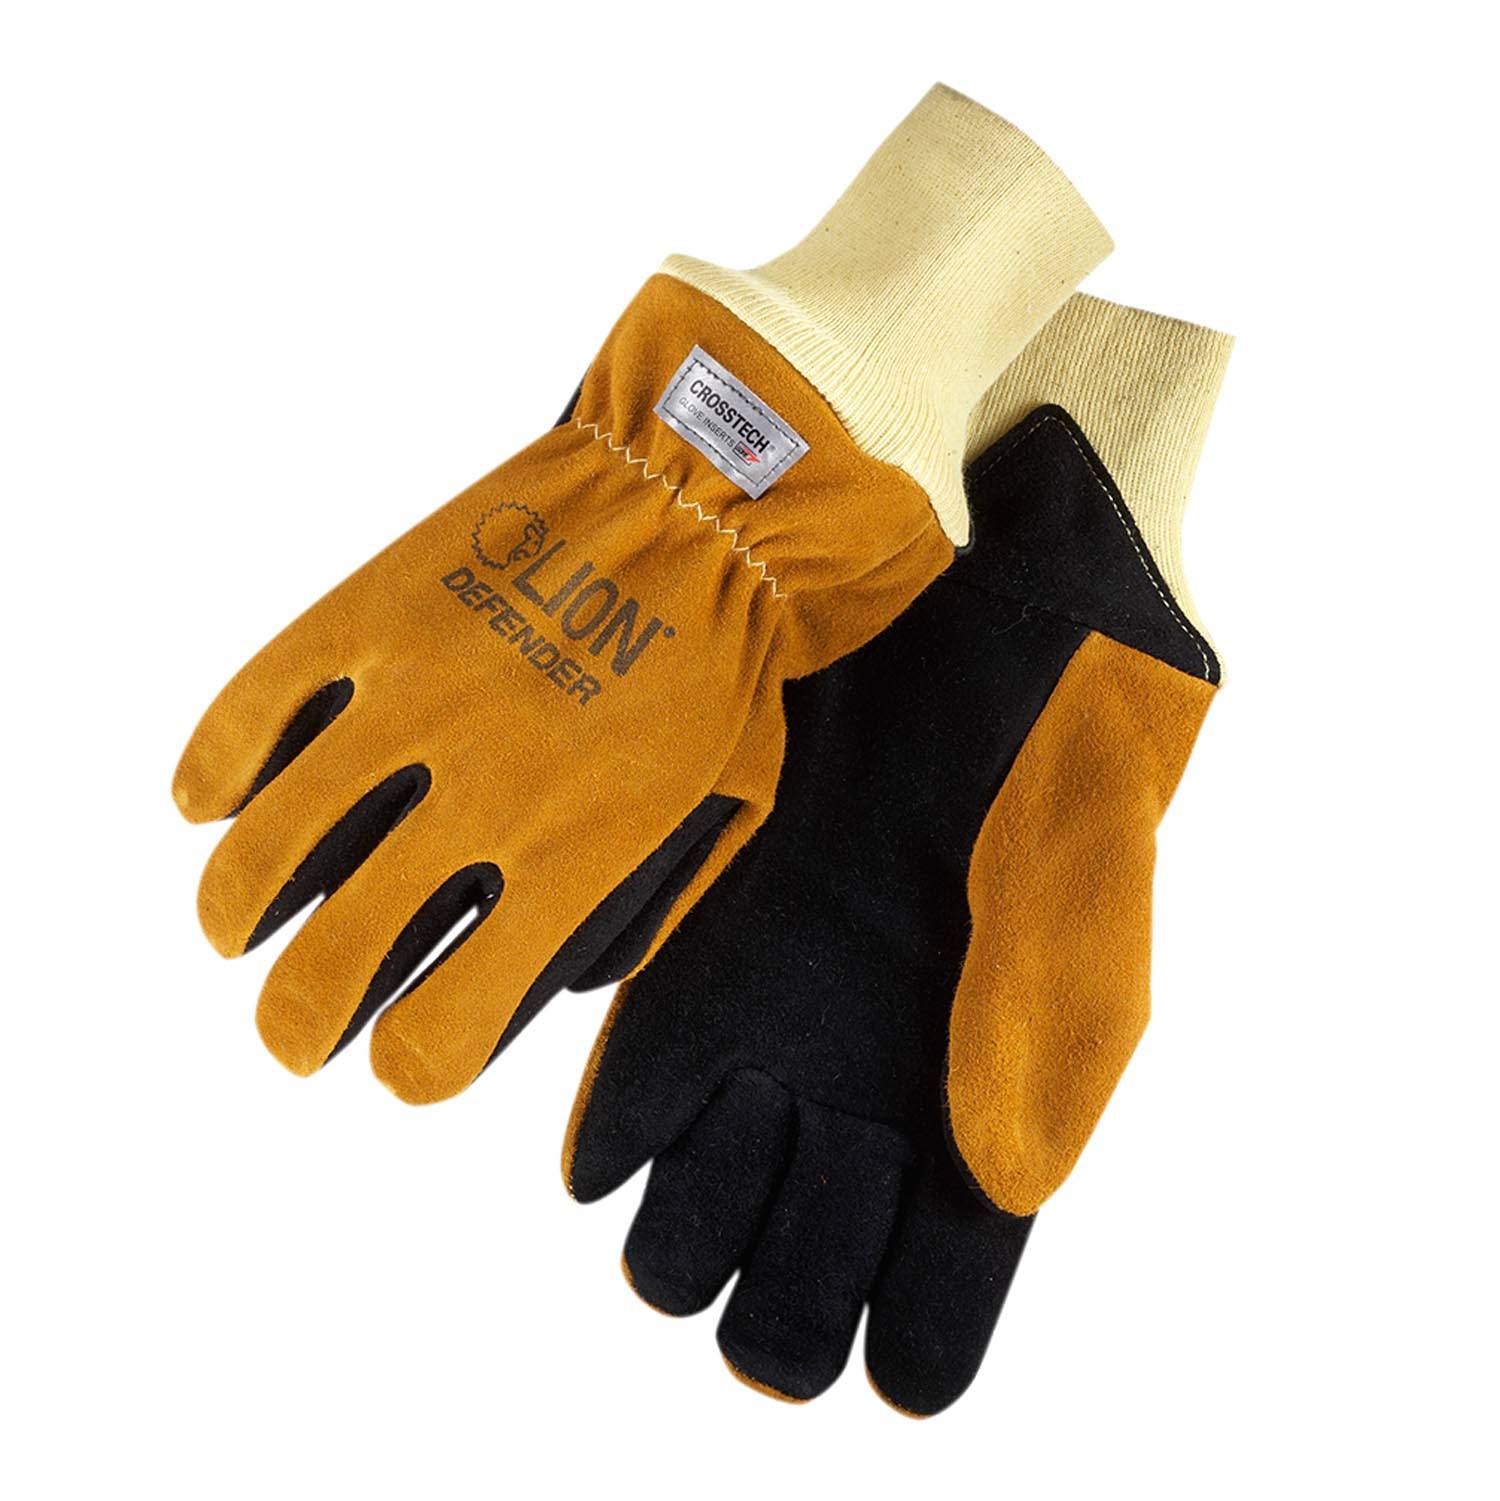 Lion Defender NFPA Gauntlet Firefighting Gloves